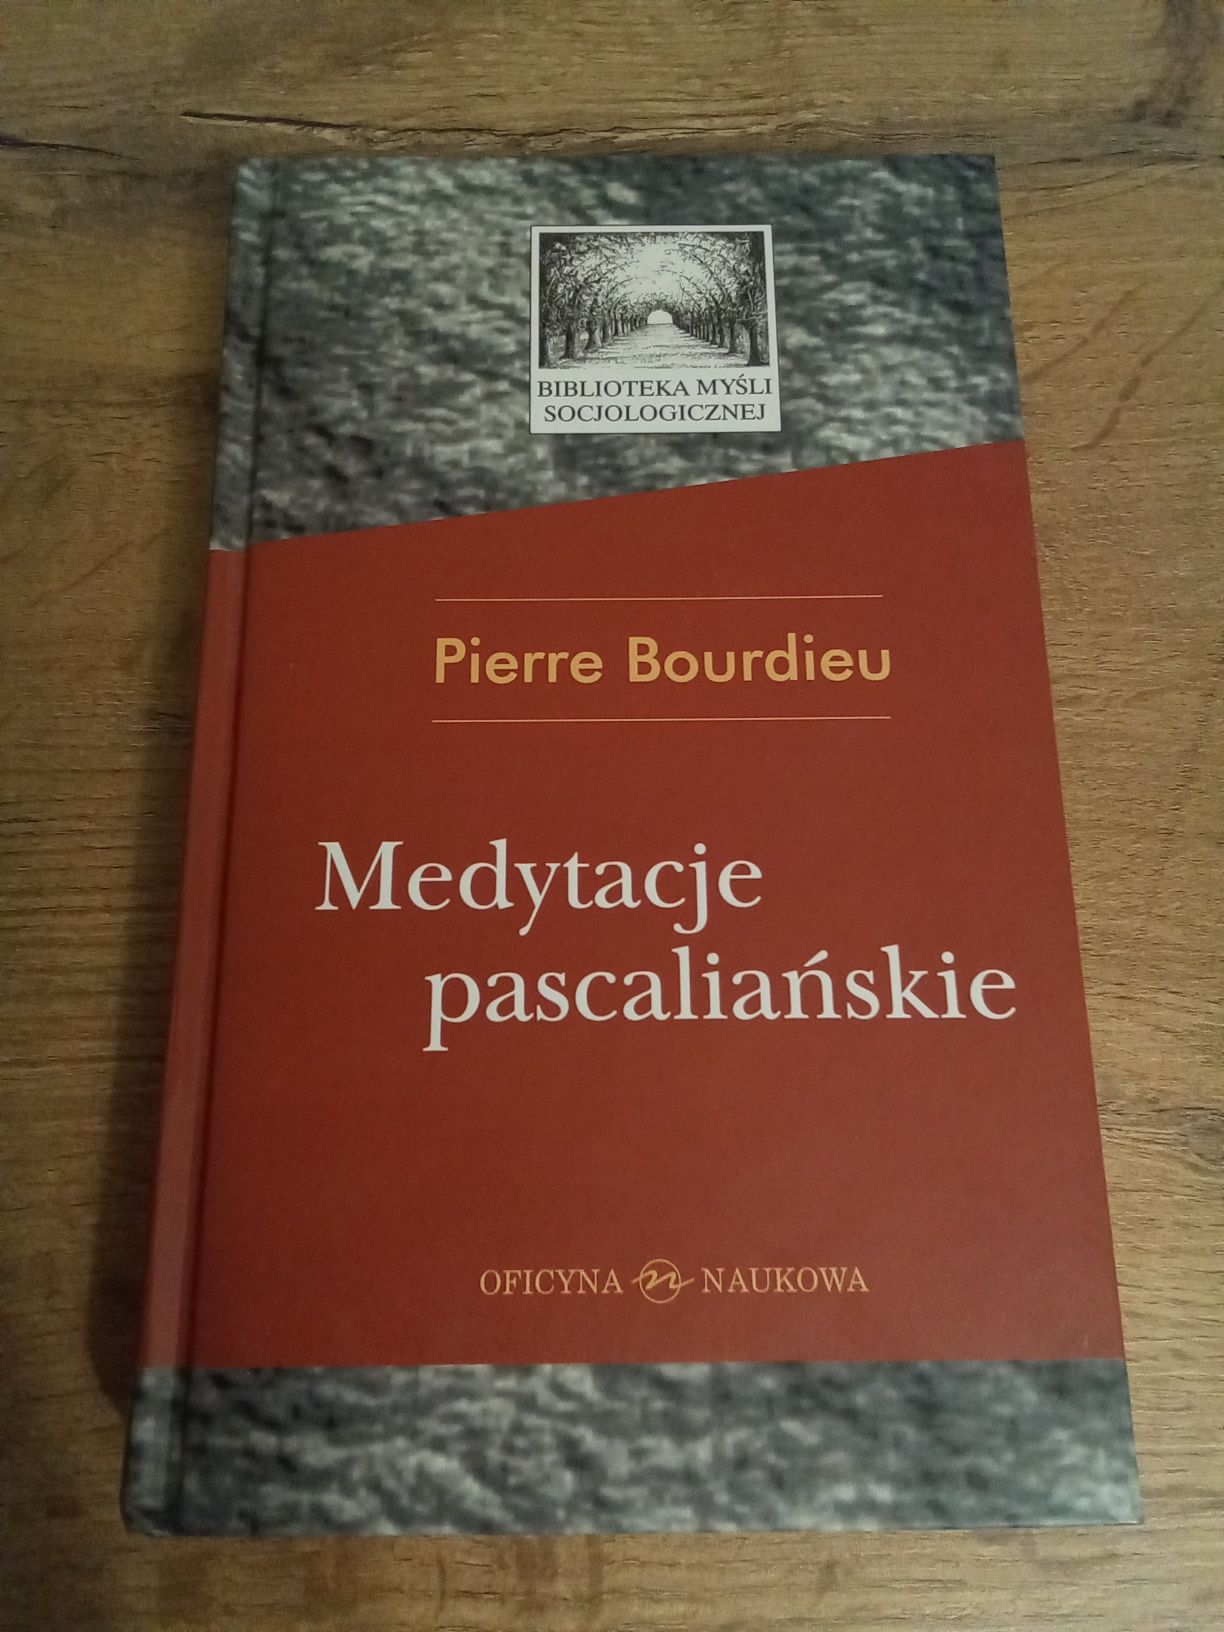 Medytacje pascaliańskie Pierre Bourdieu